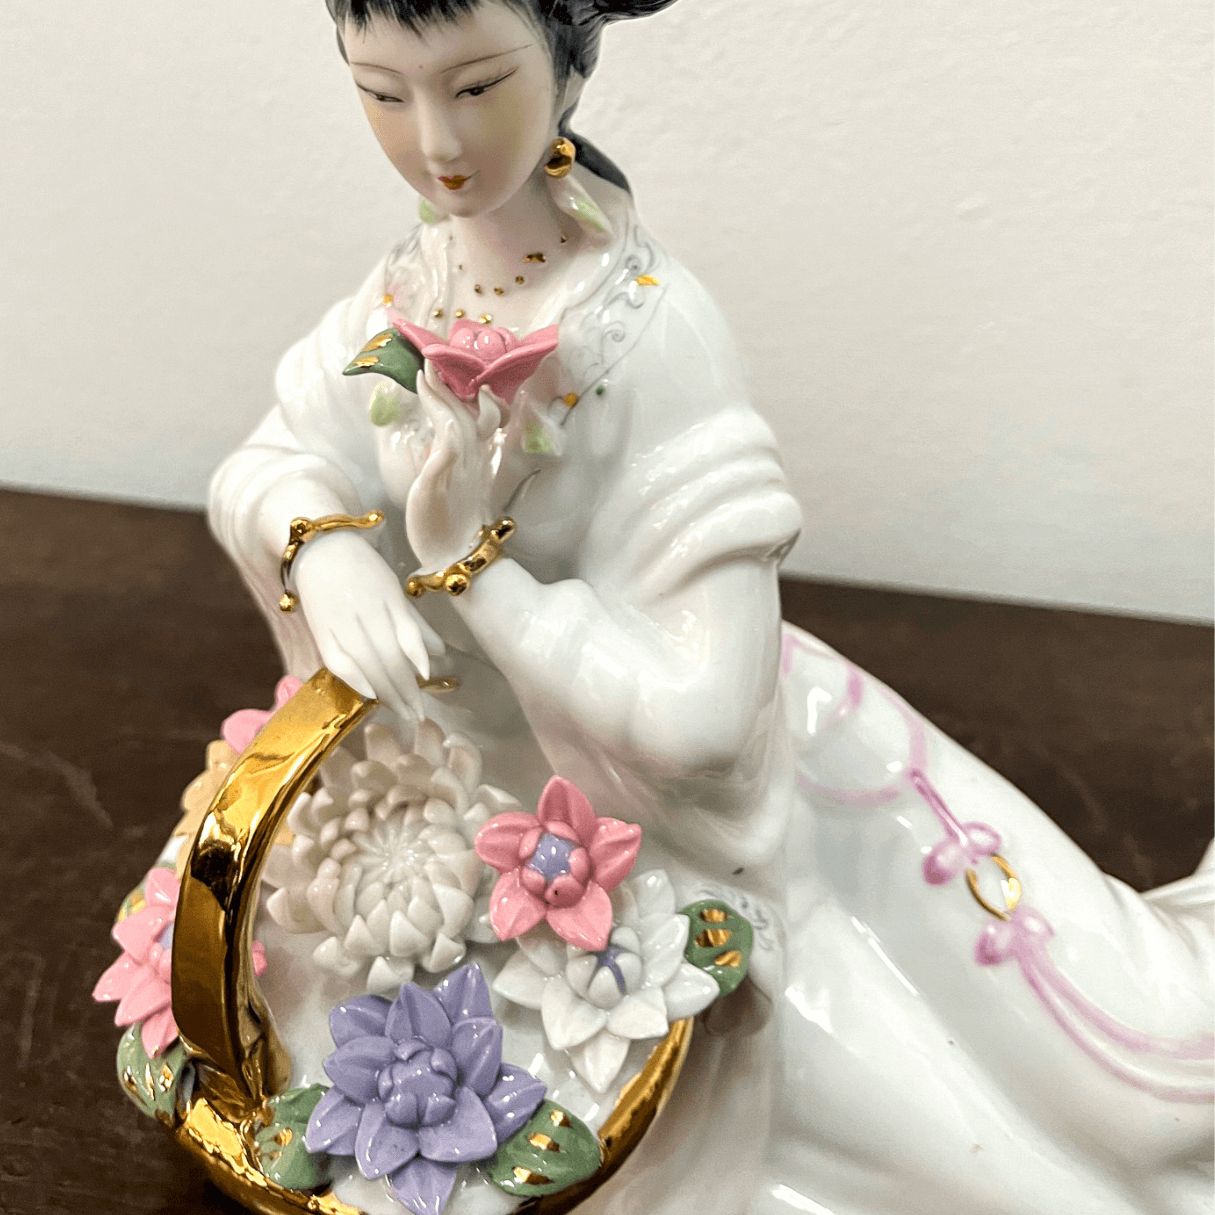 Escultura Chinesa Mulher com Flor de Lótus